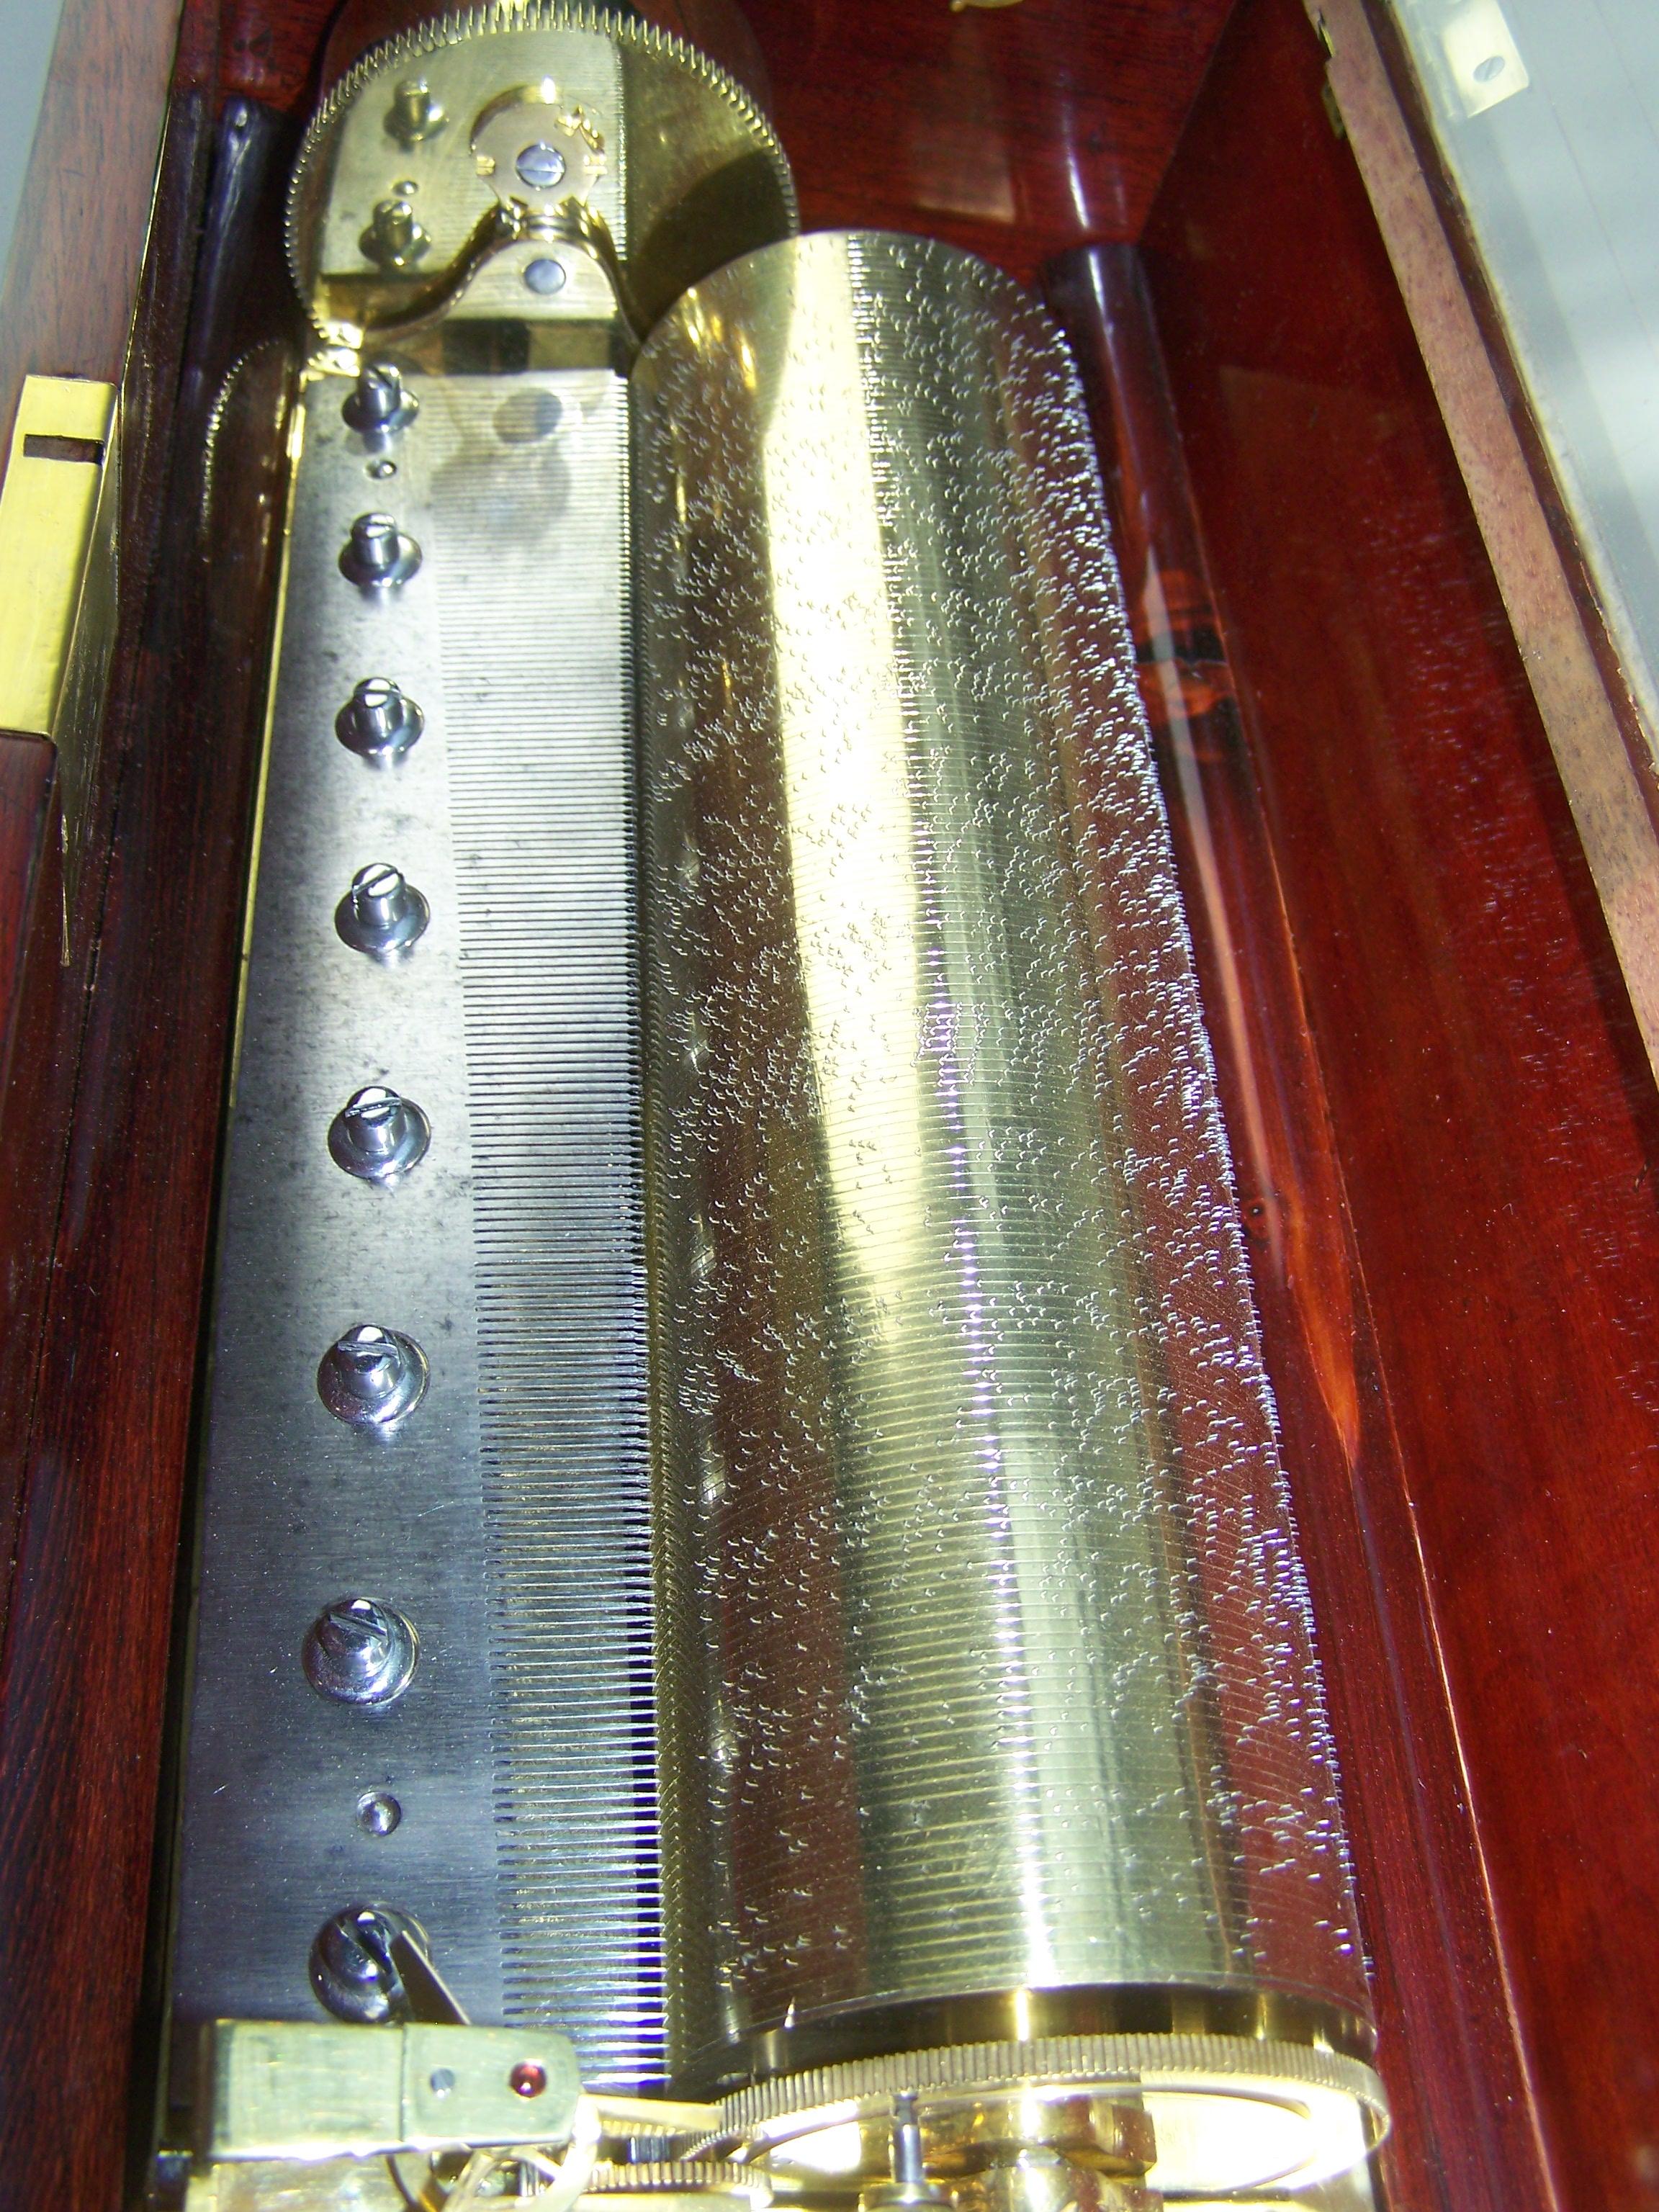 Sehr schöne und frühe Ouvertüre-Spieldose, wahrscheinlich von Lecoultre (allerdings unsigniert).
Der Klappenwindmechanismus spielt 4 Ouvertüren mit einem schönen und hellen Ton auf einem sehr feinen Kamm. Der Fadenzylinder ist 29 cm lang.
Der Deckel